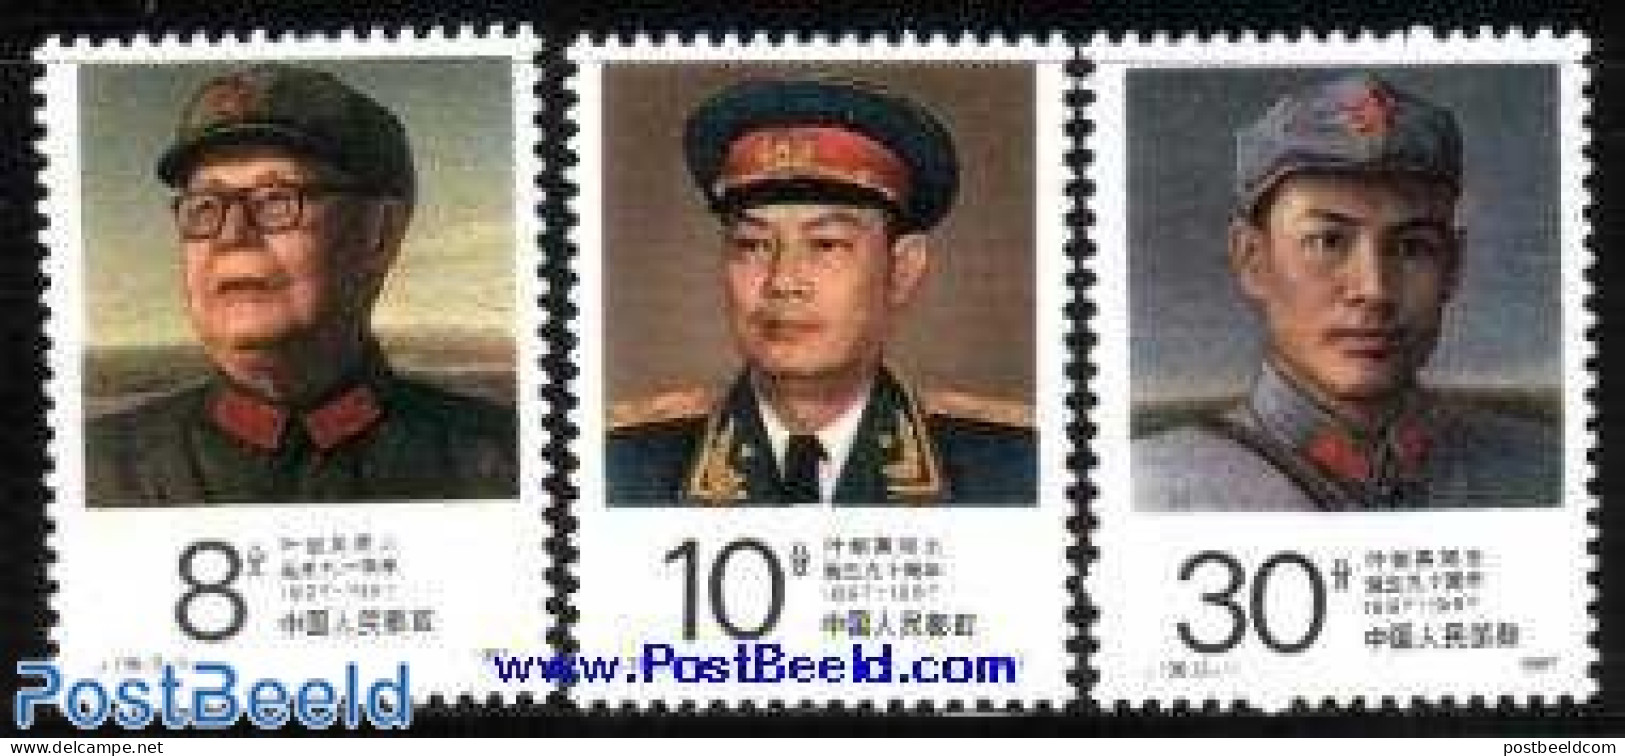 China People’s Republic 1987 Ye Jiangying 3v, Mint NH - Ongebruikt